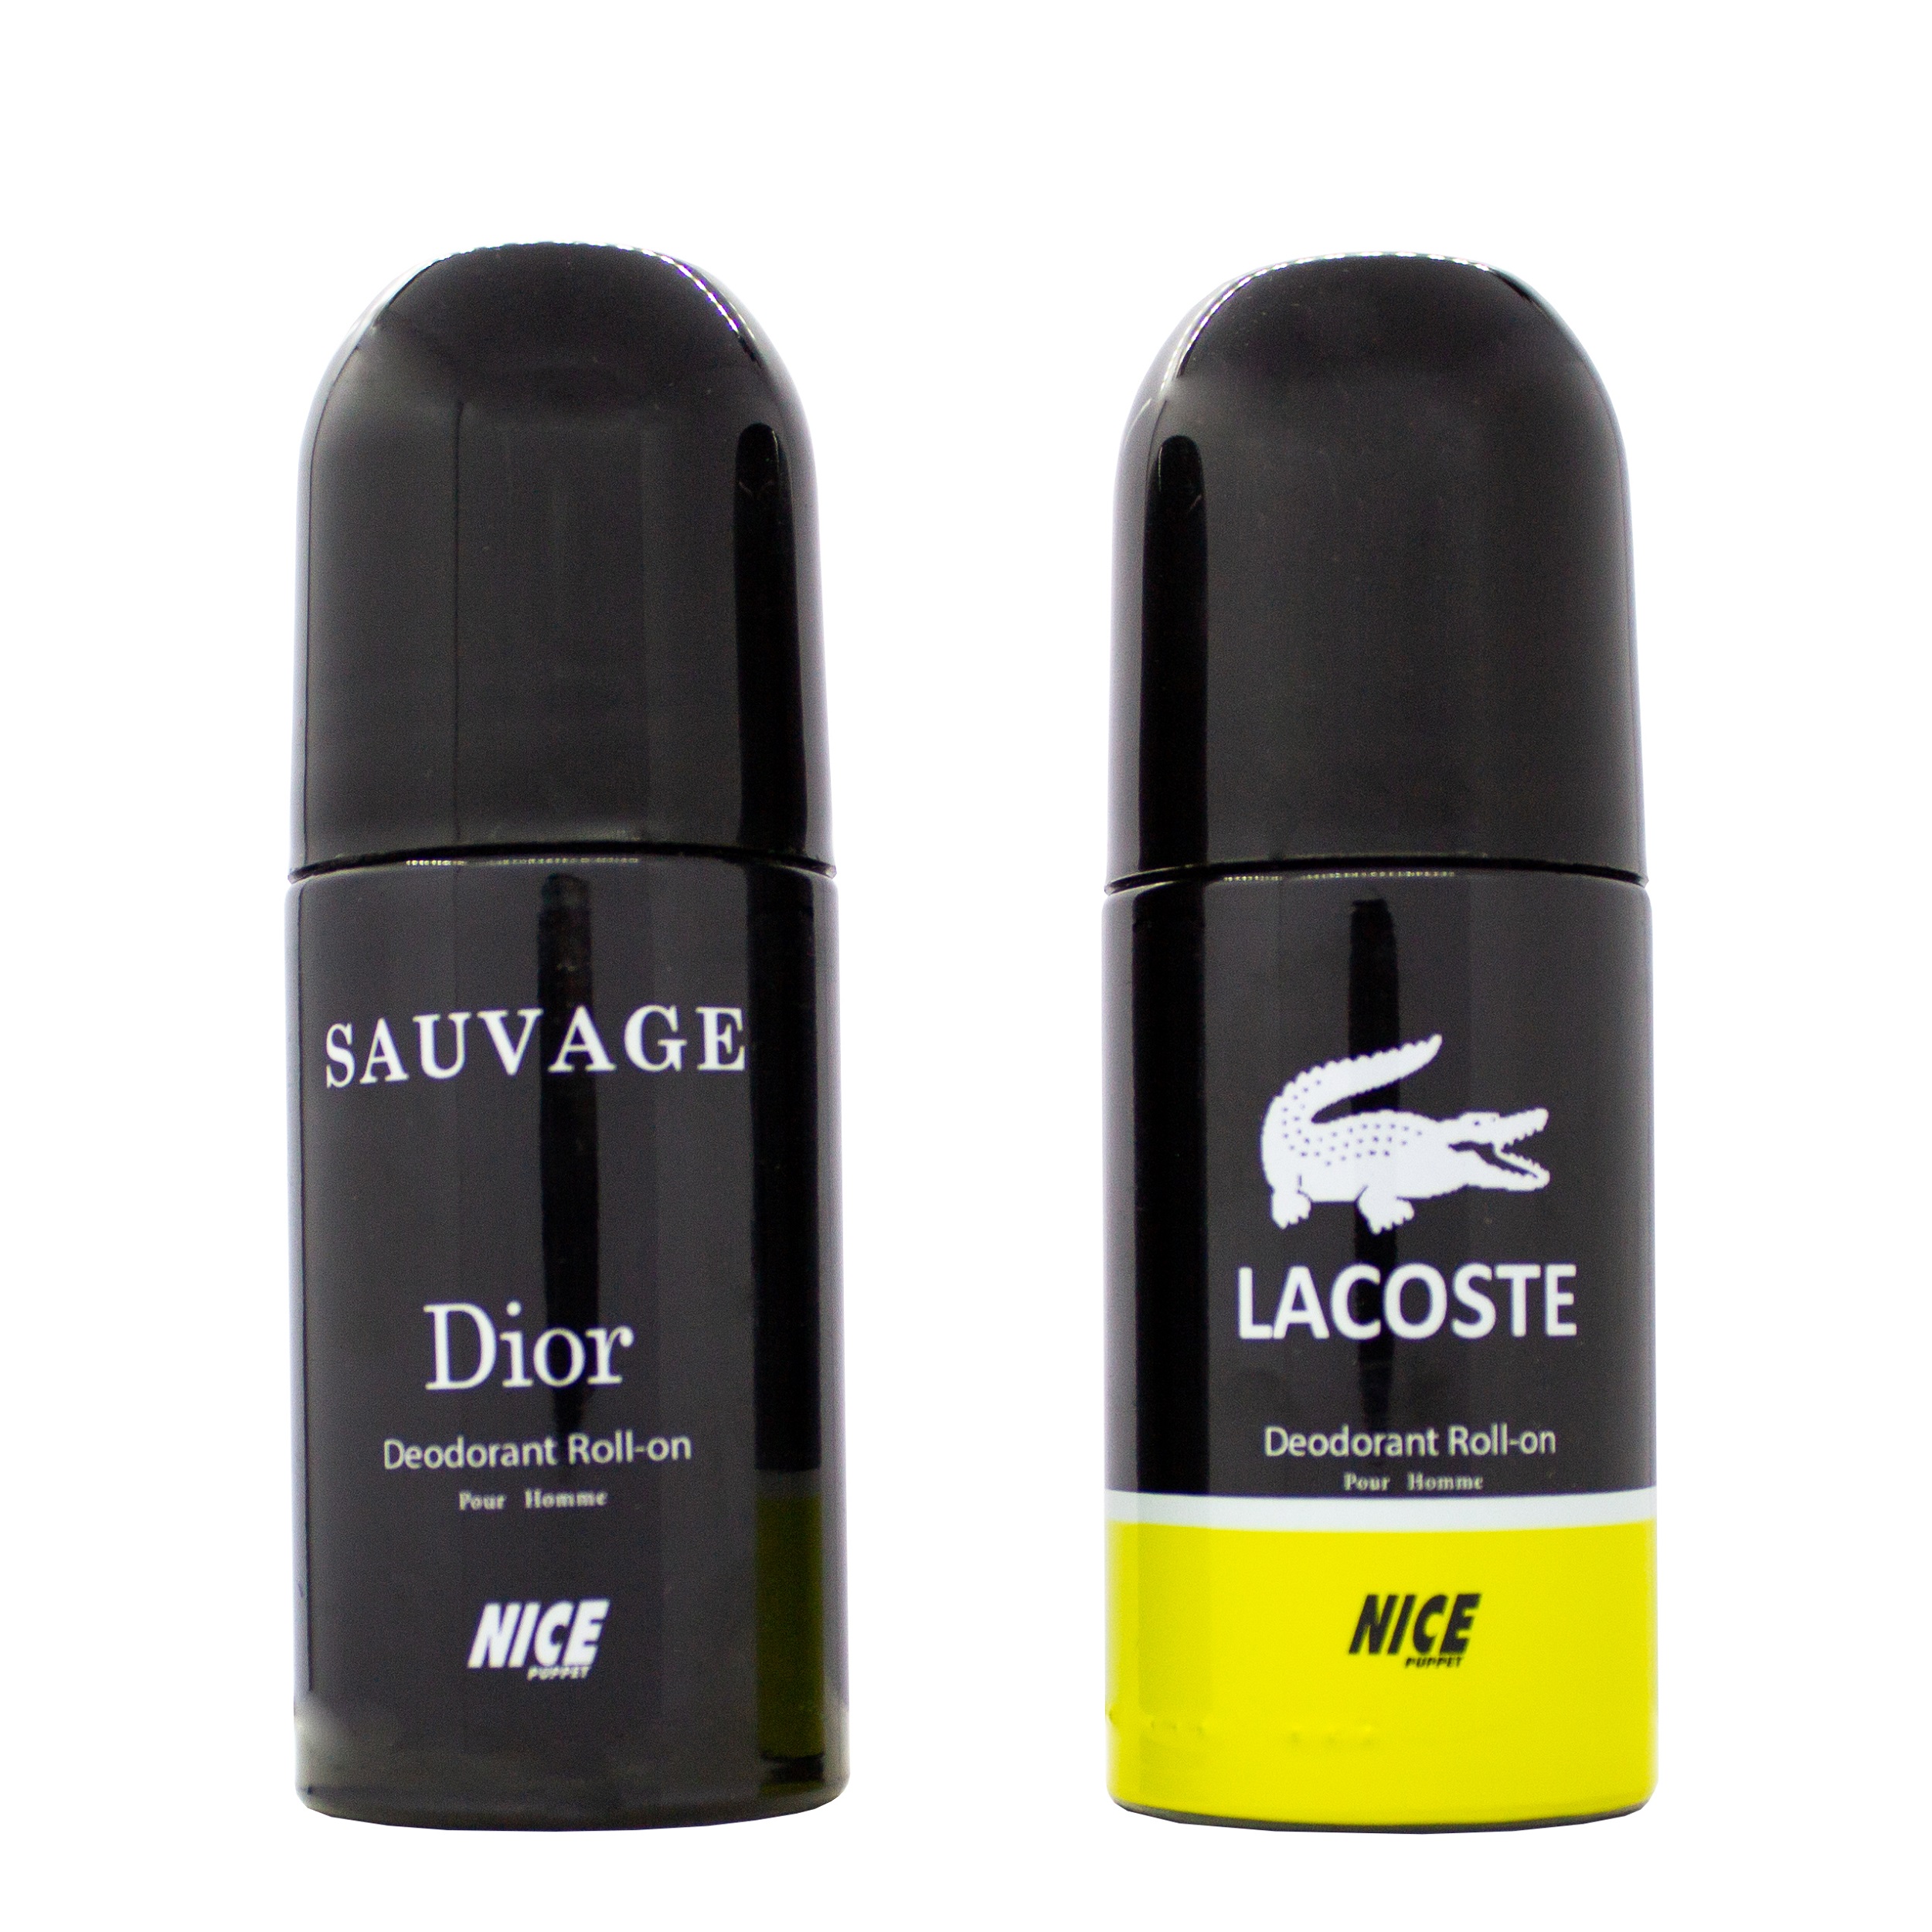 رول ضد تعریق مردانه نایس پاپت مدل savage Dior حجم 60 میلی لیتر به همراه رول ضد تعریق مردانه مدل Lacoste حجم 60 میلی لیتر -  - 1